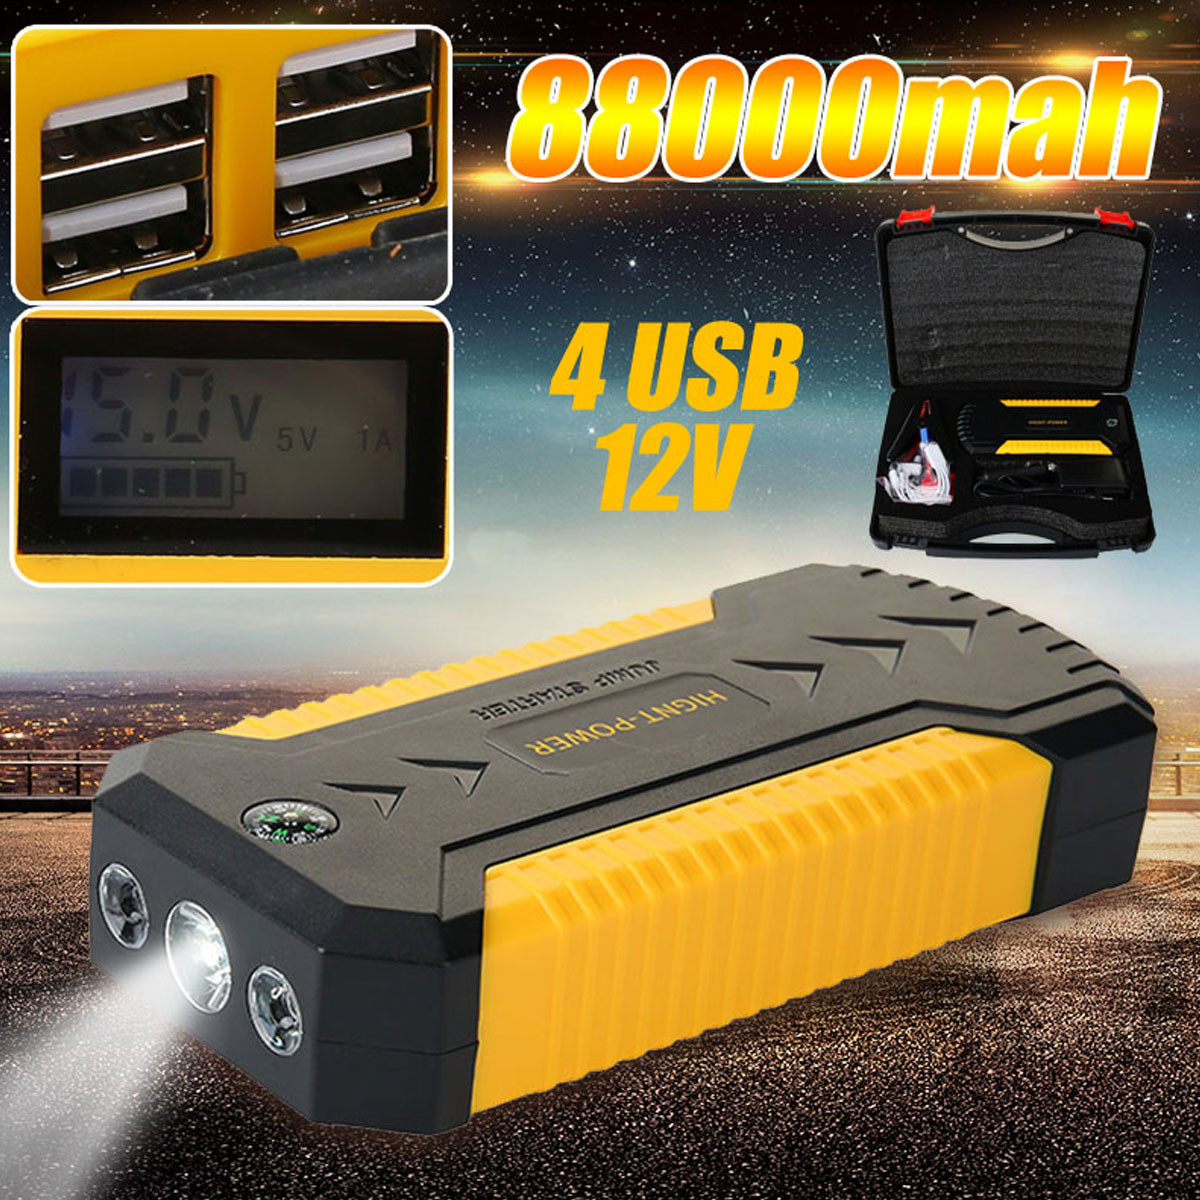 12V-82800mAh-Jump-Starter-Engine-Emergency-Start-Battery-4-USB-Power-Bank-LED-W-Smart-Clip-1424715-2